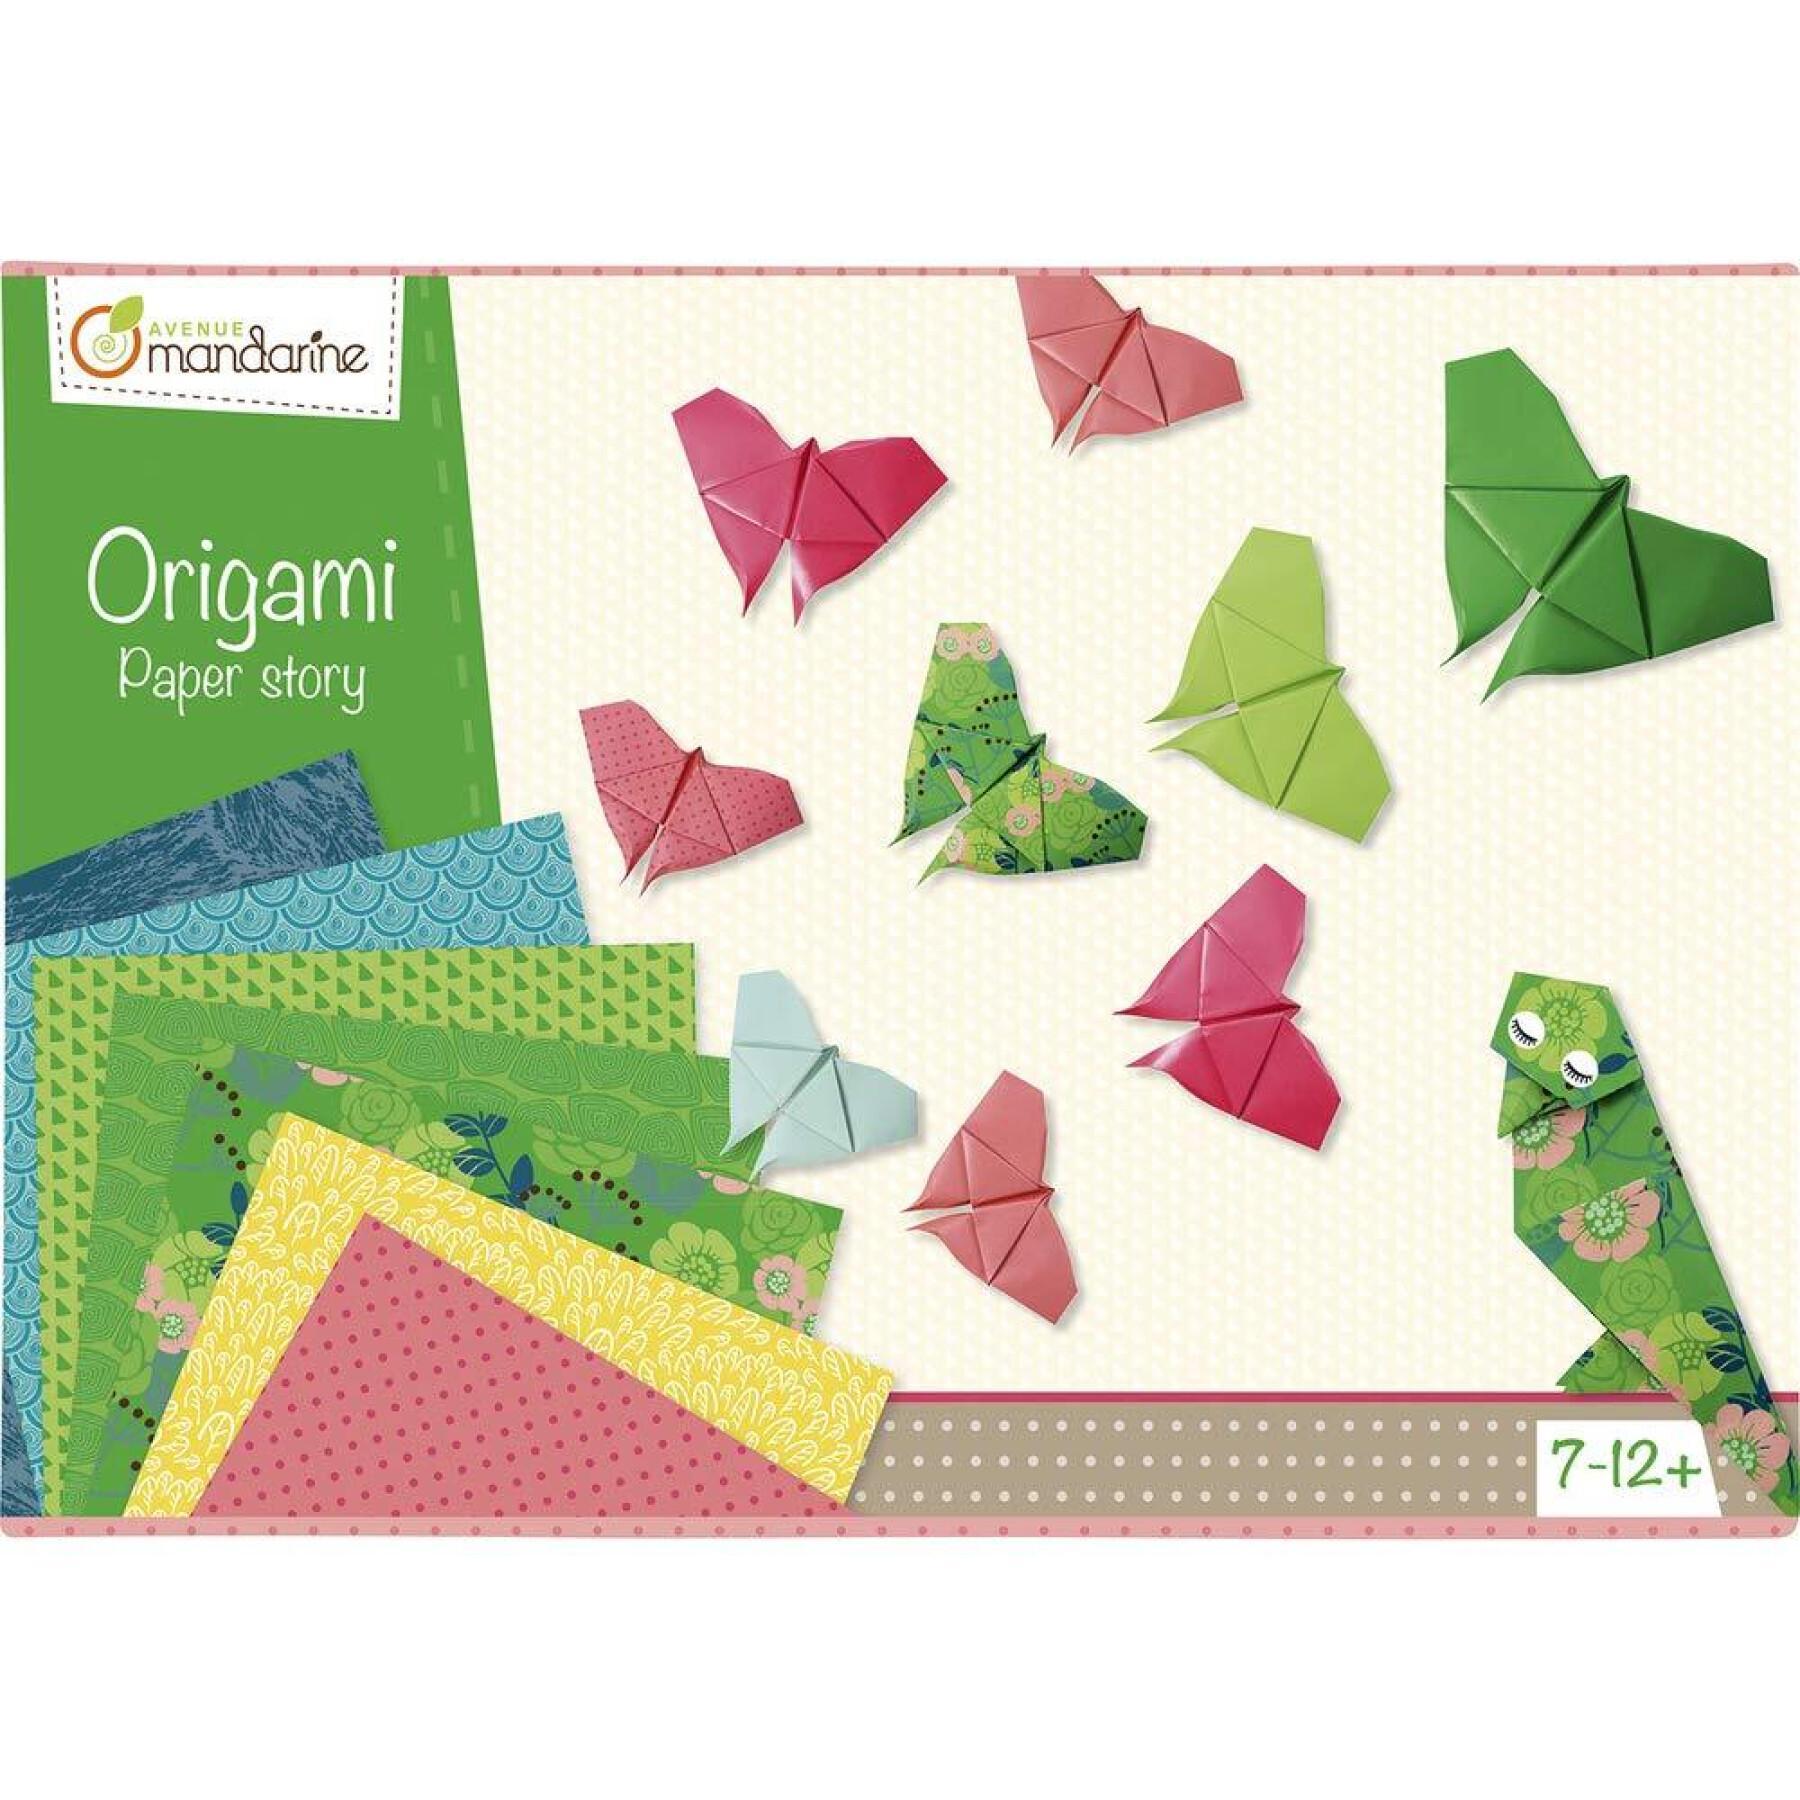 Caja de origami creativa Avenue Mandarine